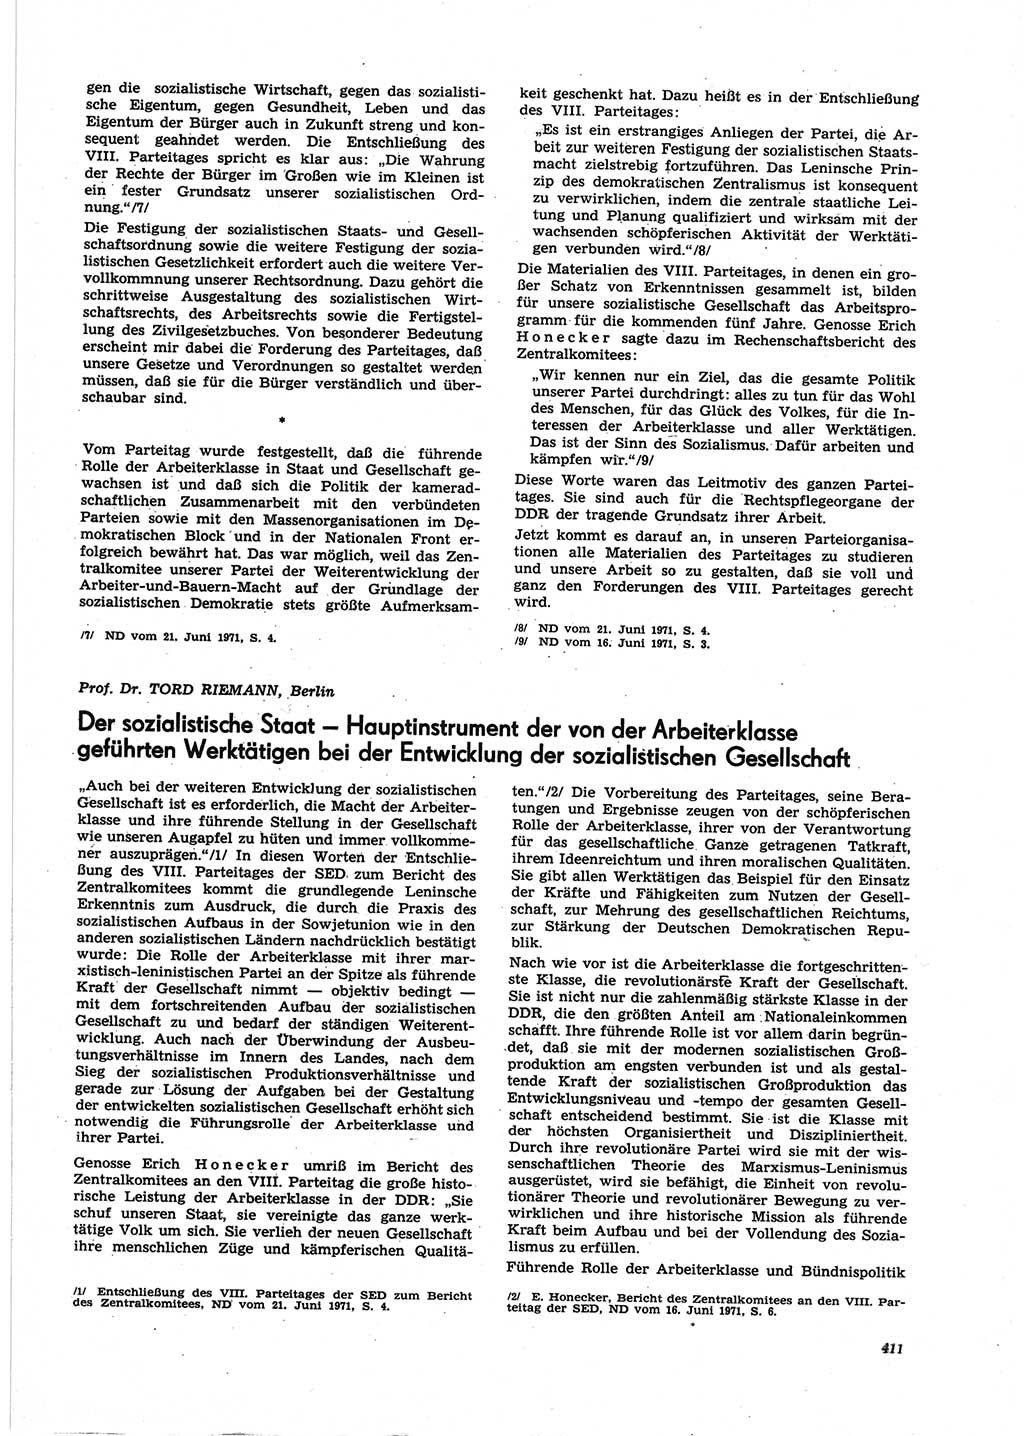 Neue Justiz (NJ), Zeitschrift für Recht und Rechtswissenschaft [Deutsche Demokratische Republik (DDR)], 25. Jahrgang 1971, Seite 411 (NJ DDR 1971, S. 411)